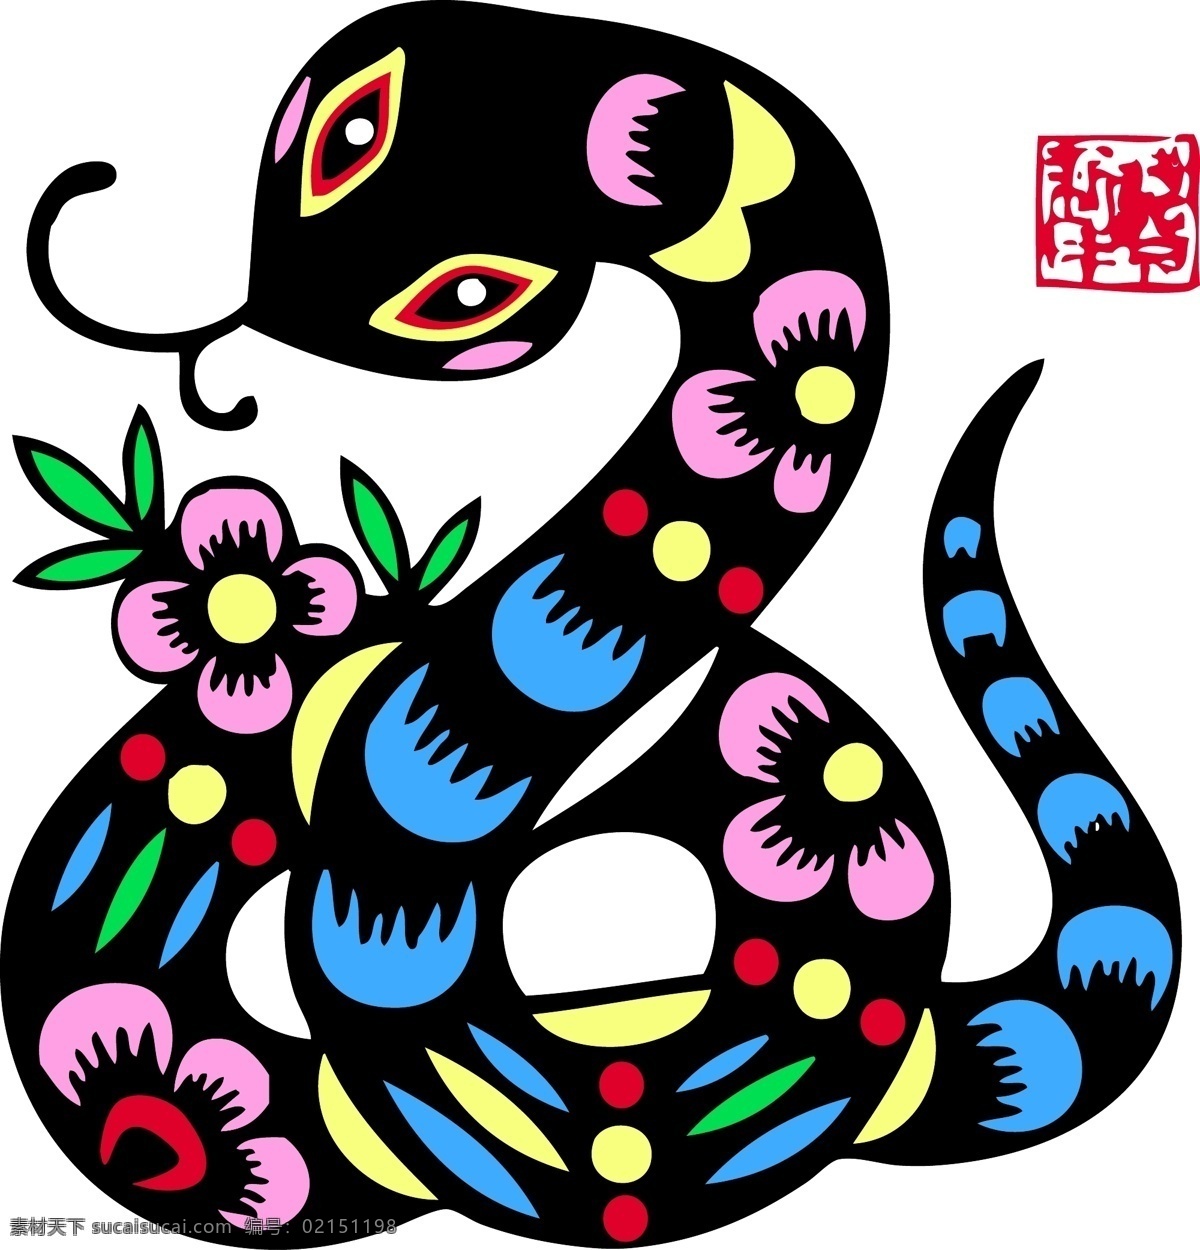 福建樟湖蛇节文化